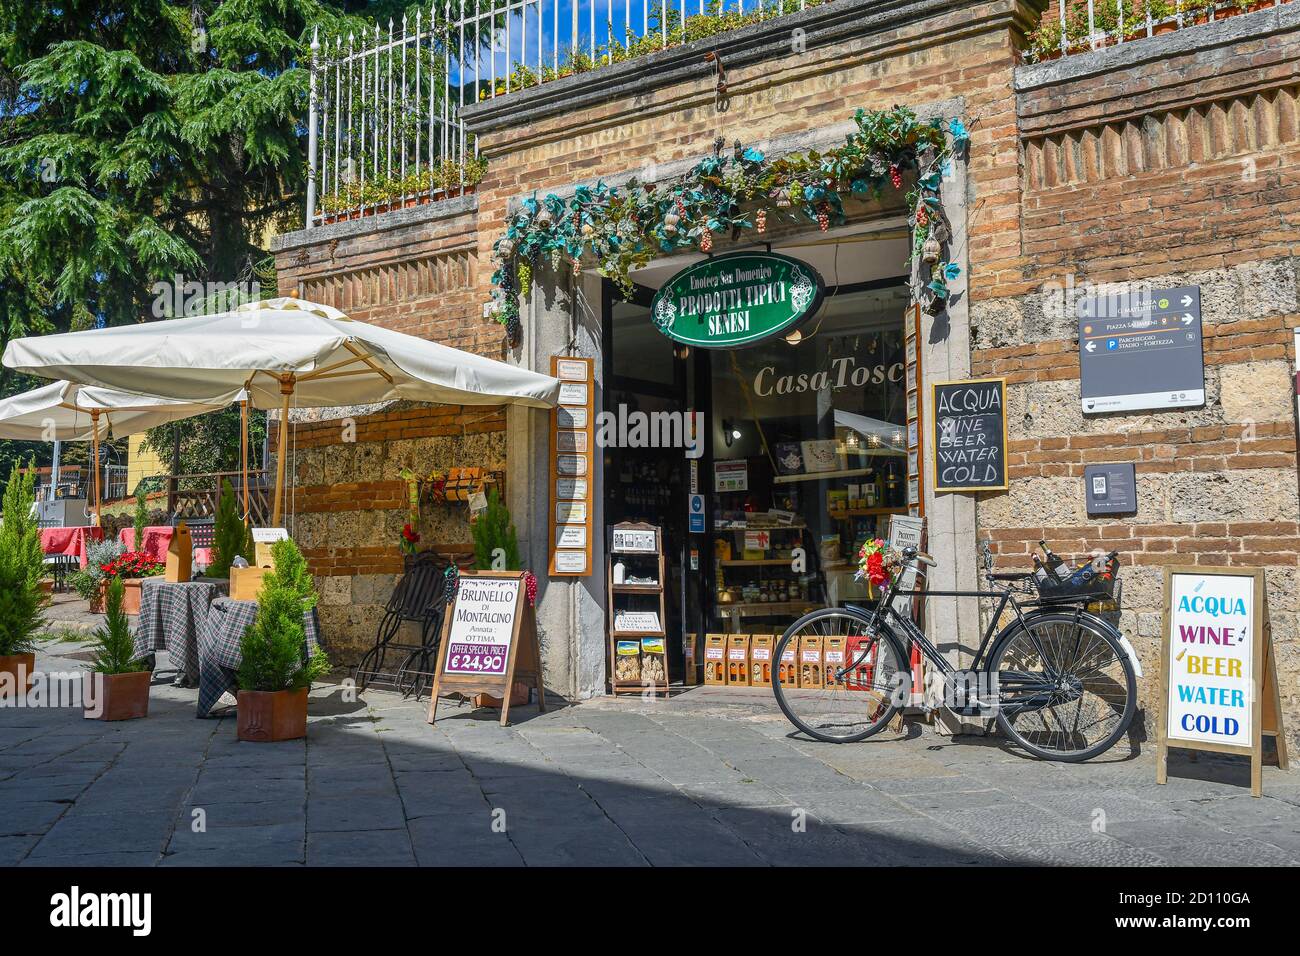 Extérieur de l'Enoteca San Domenico magasin de nourriture et de vin vendant des produits typiques de Toscane dans le centre historique de Sienne, Toscane, Italie Banque D'Images